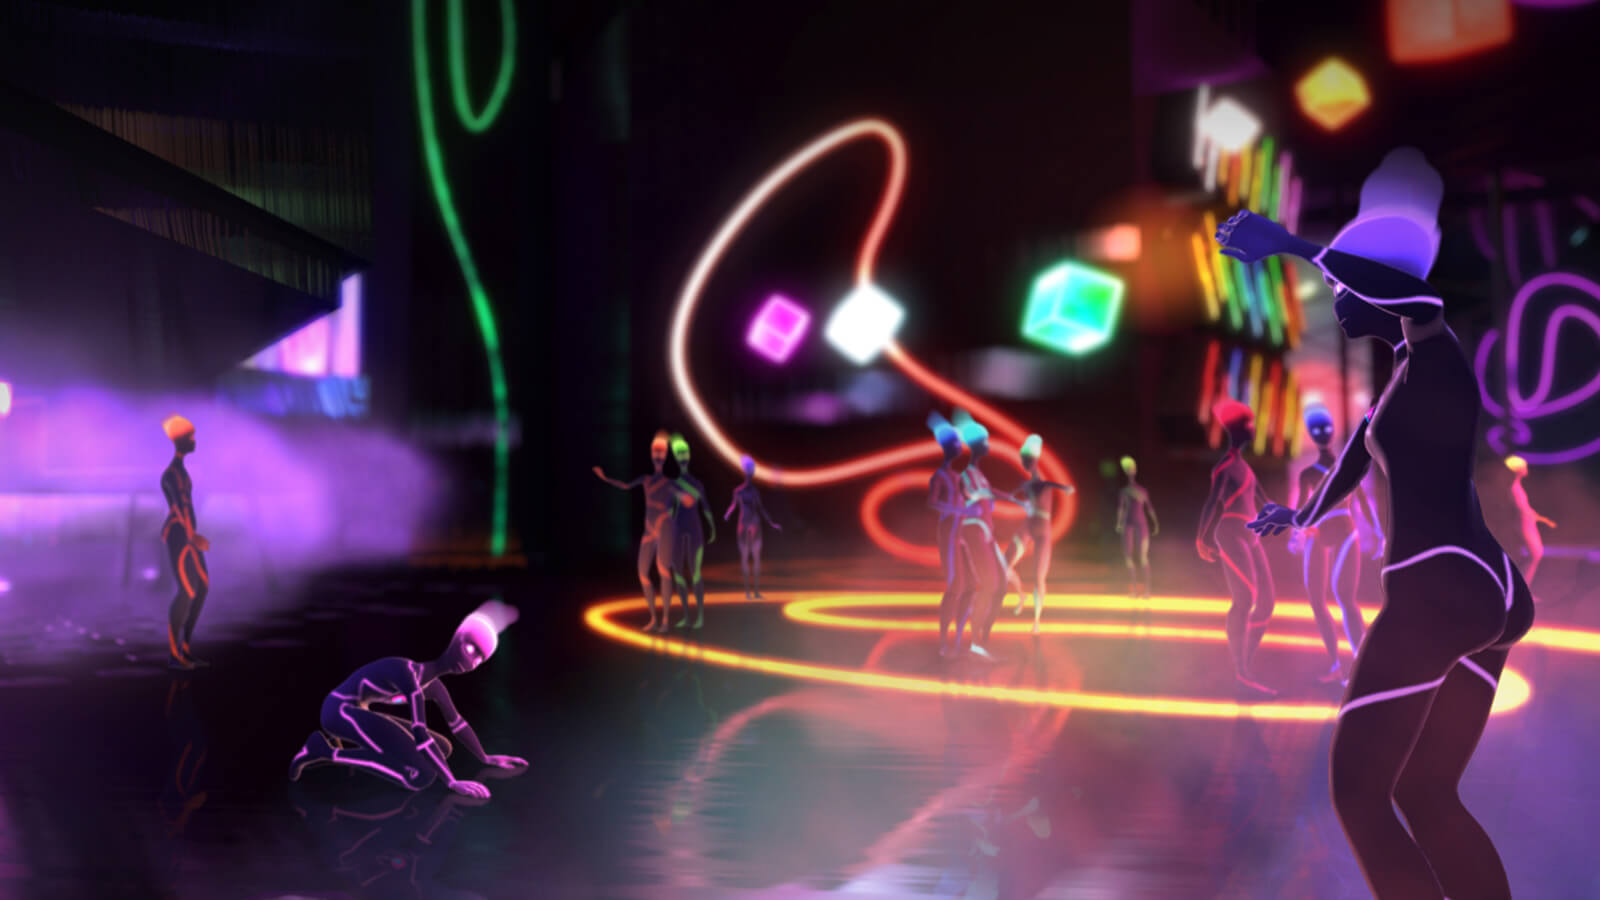 Personajes con rasgos de colores neón se mezclan en una discoteca mientras que una figura se cae de rodillas